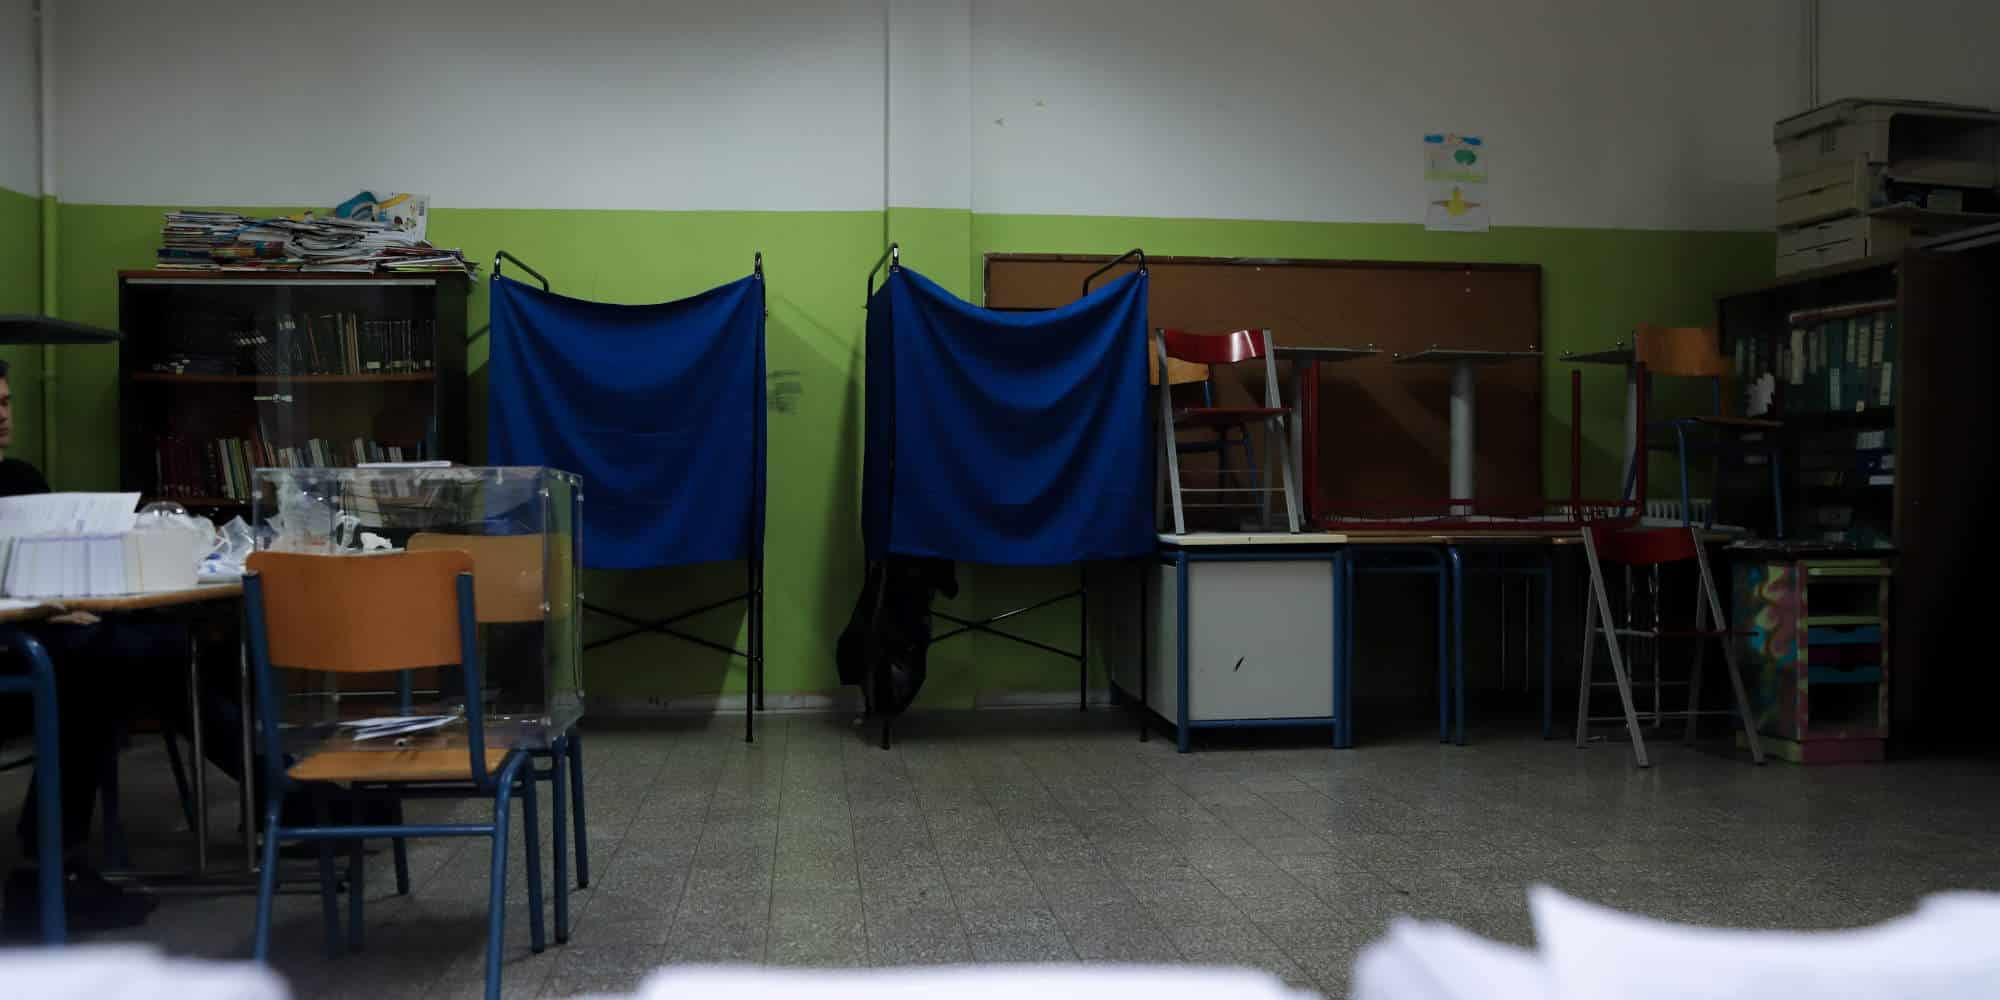 Σχολική αίθουσα με παραβάν σε ημέρα εκλογών - Επιστολική ψήφος